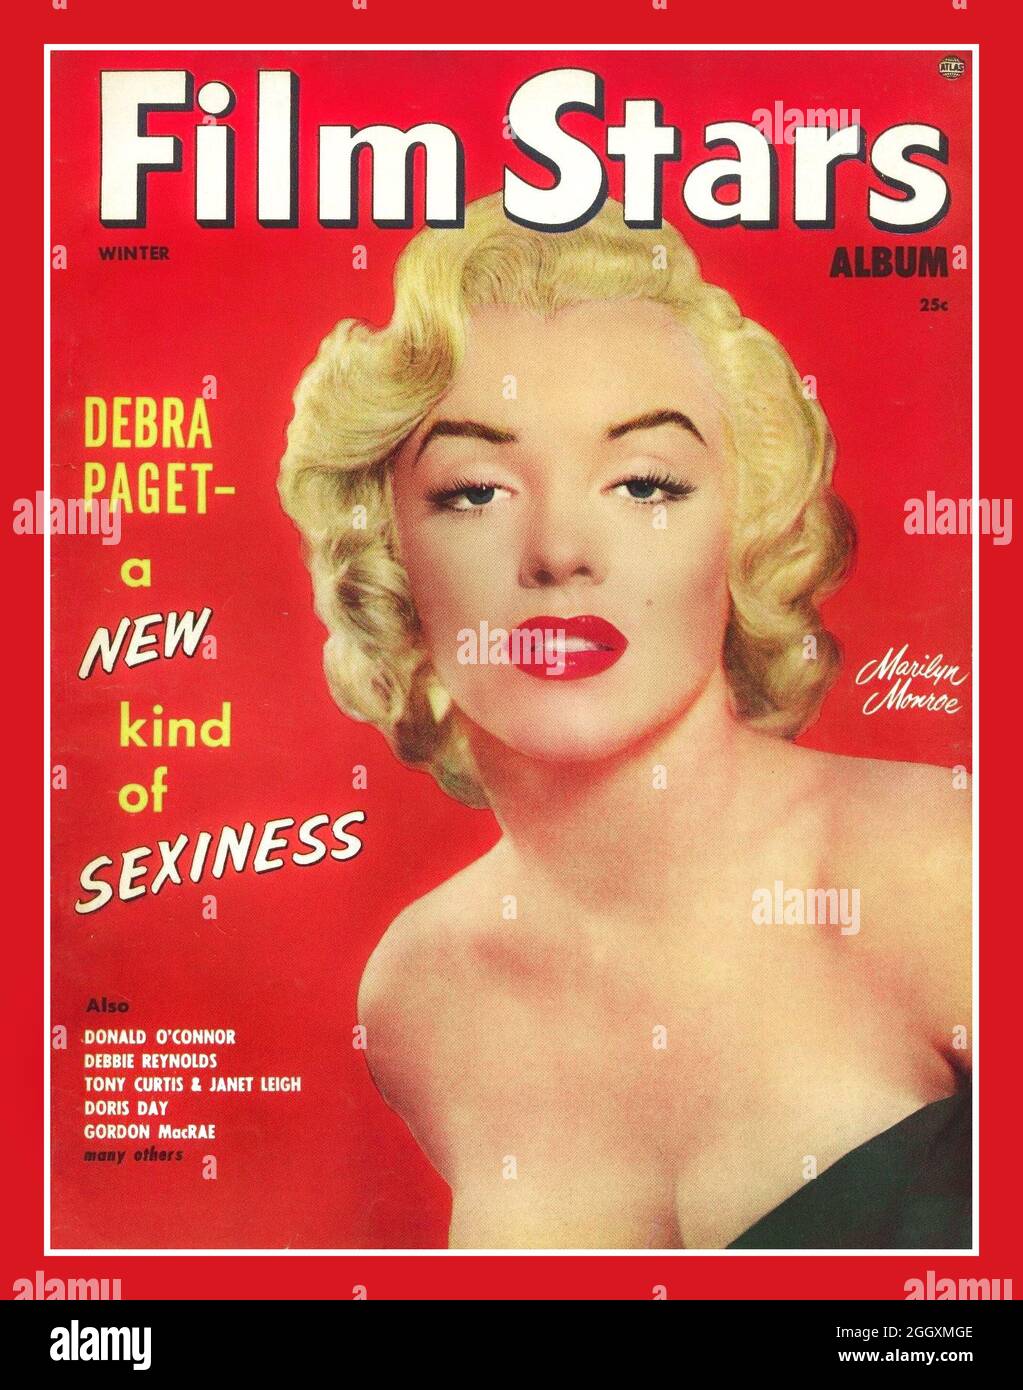 MARILYN MONROE 1950's film STARS 'film album rivista 'movie con Marilyn Monroe in copertina. Le riviste dei fan hanno dato al pubblico un modo per sperimentare la magia dei film oltre il Cinema.le riviste hanno anche dato ai produttori un modo per promuovere le loro stelle e film in arrivo Foto Stock